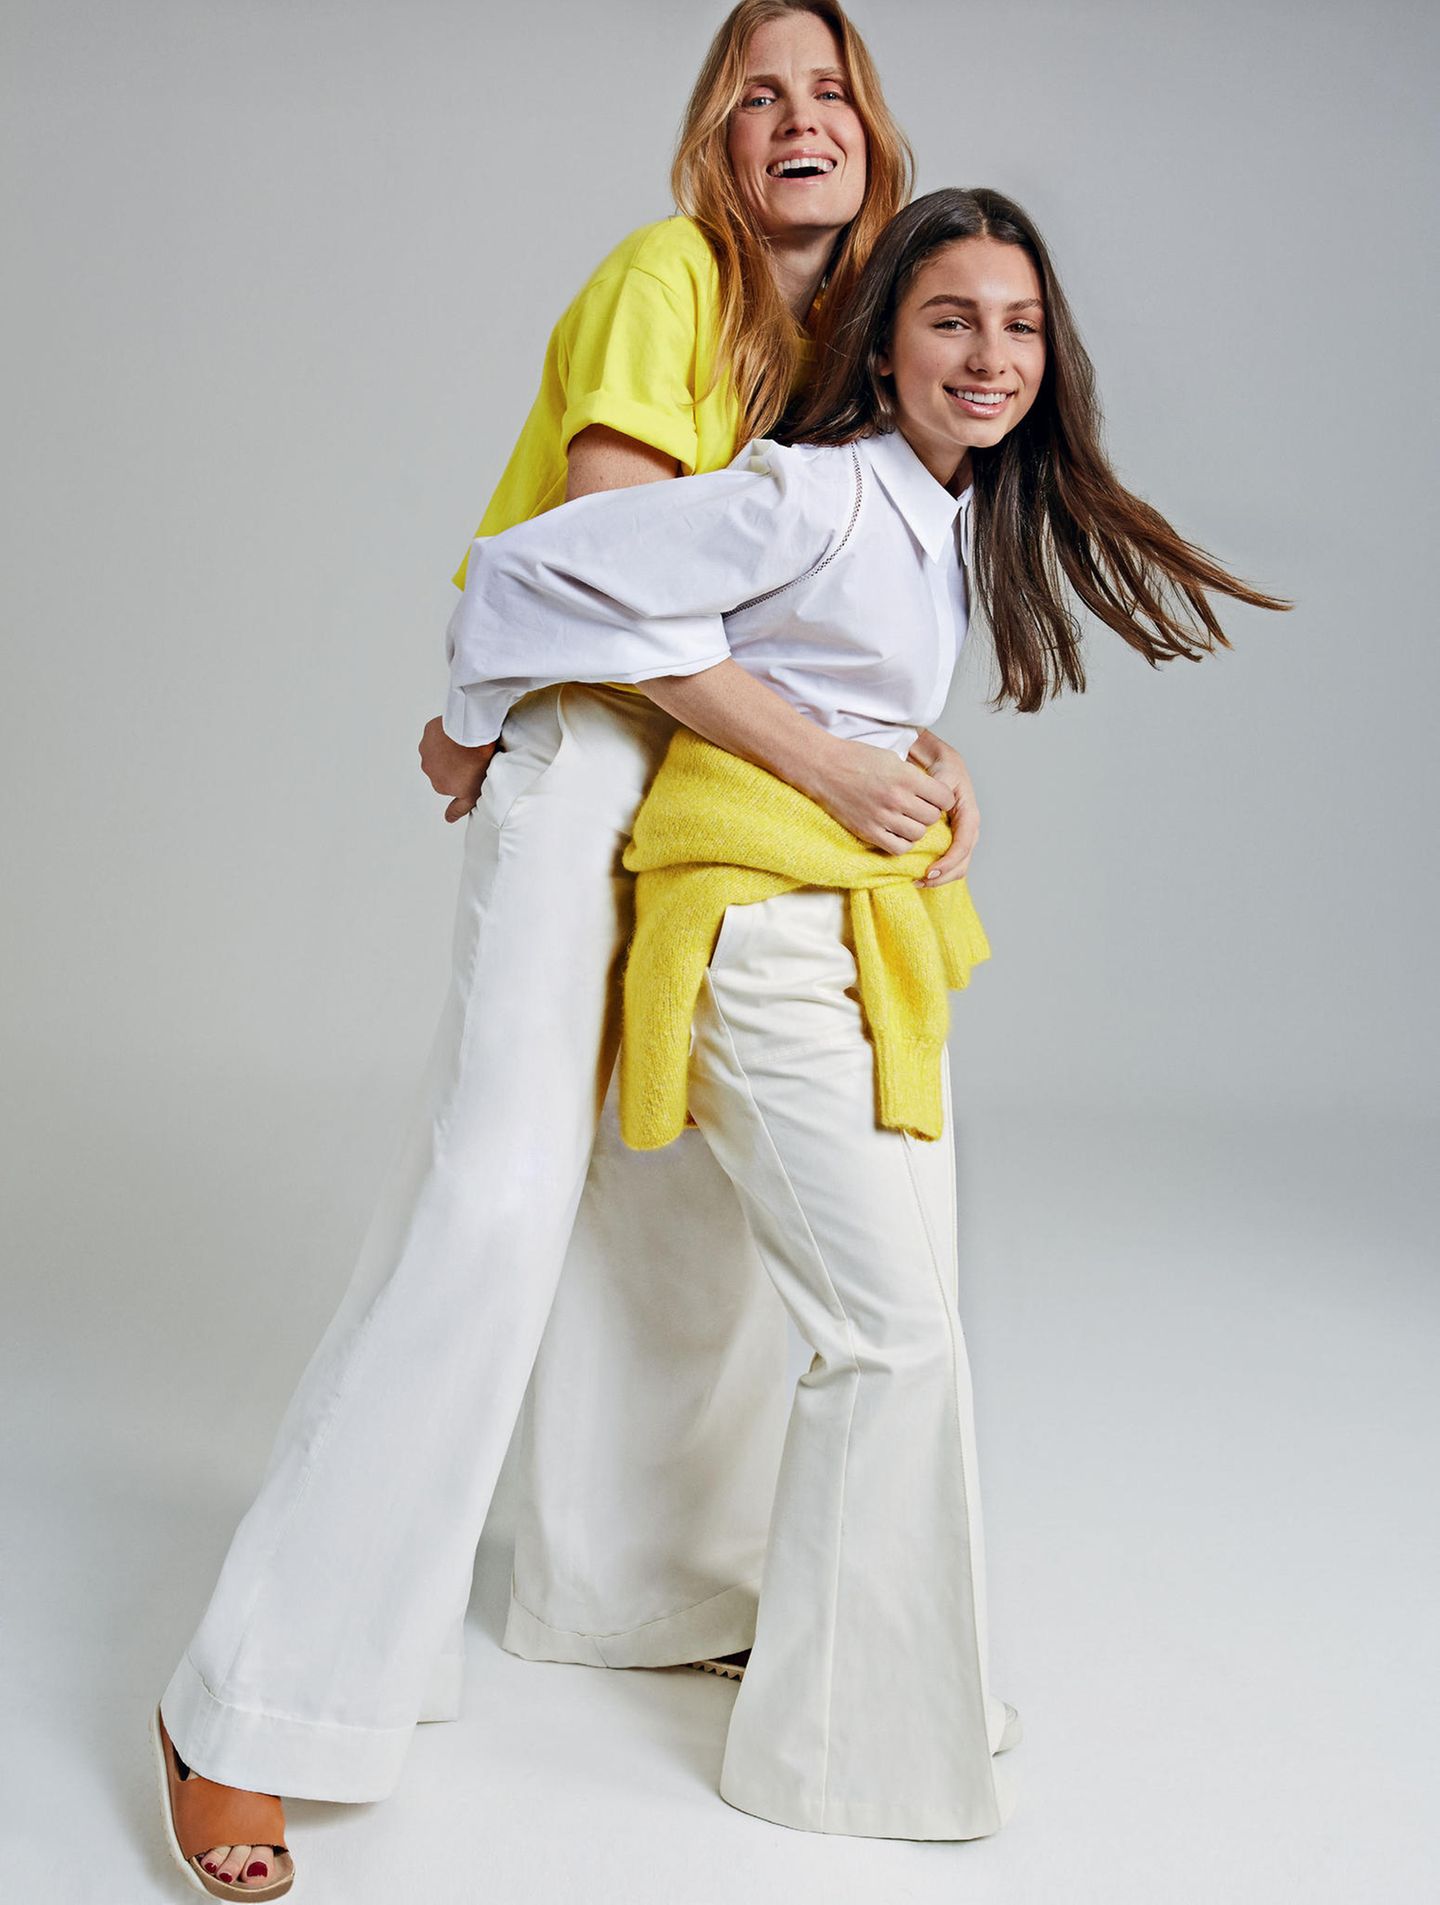 Mutter-Tochter-Looks: Mutter und Tochter in weißen Outfits mit jeweils einem knallgelben Teil